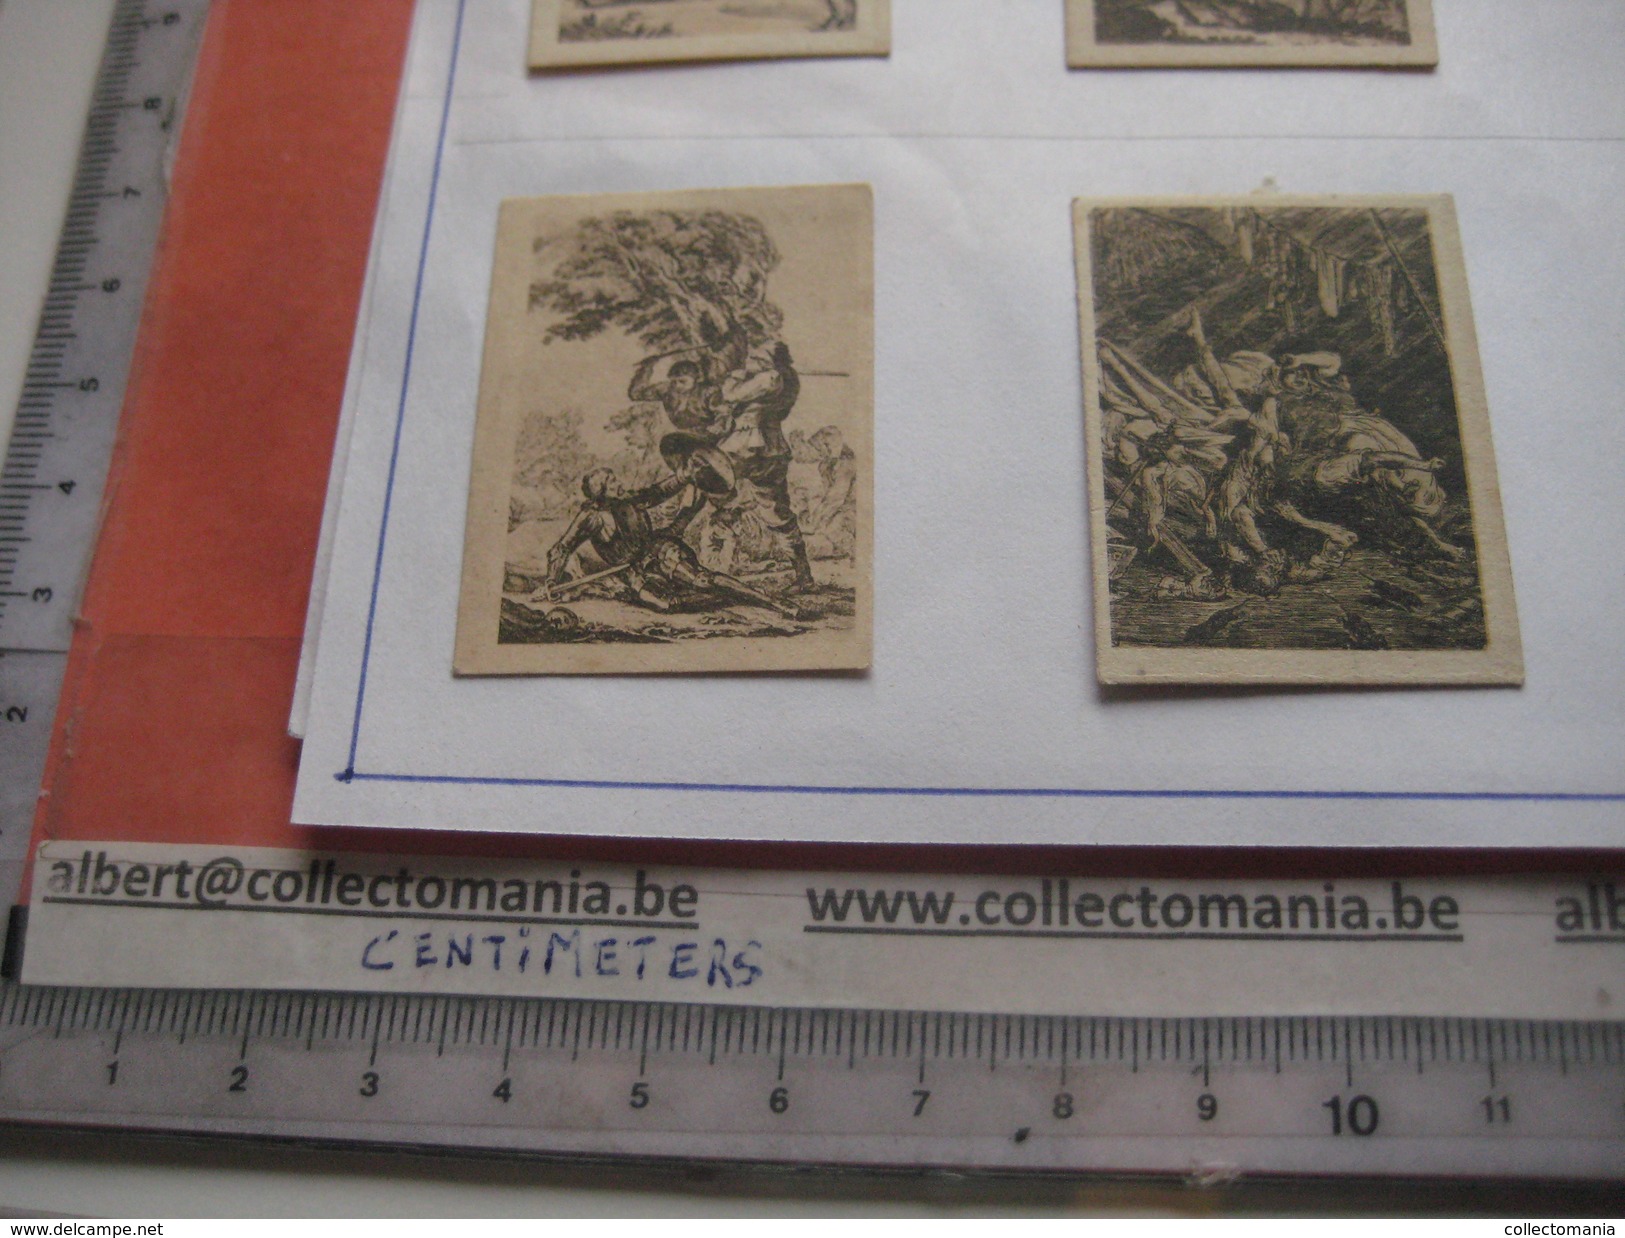 79 Figuritas diff Thomas - Barcelona. Figuras De Cervantes ORIGINALES (3,3 x 4,5 cms.) glued down with paperstrip LITHO